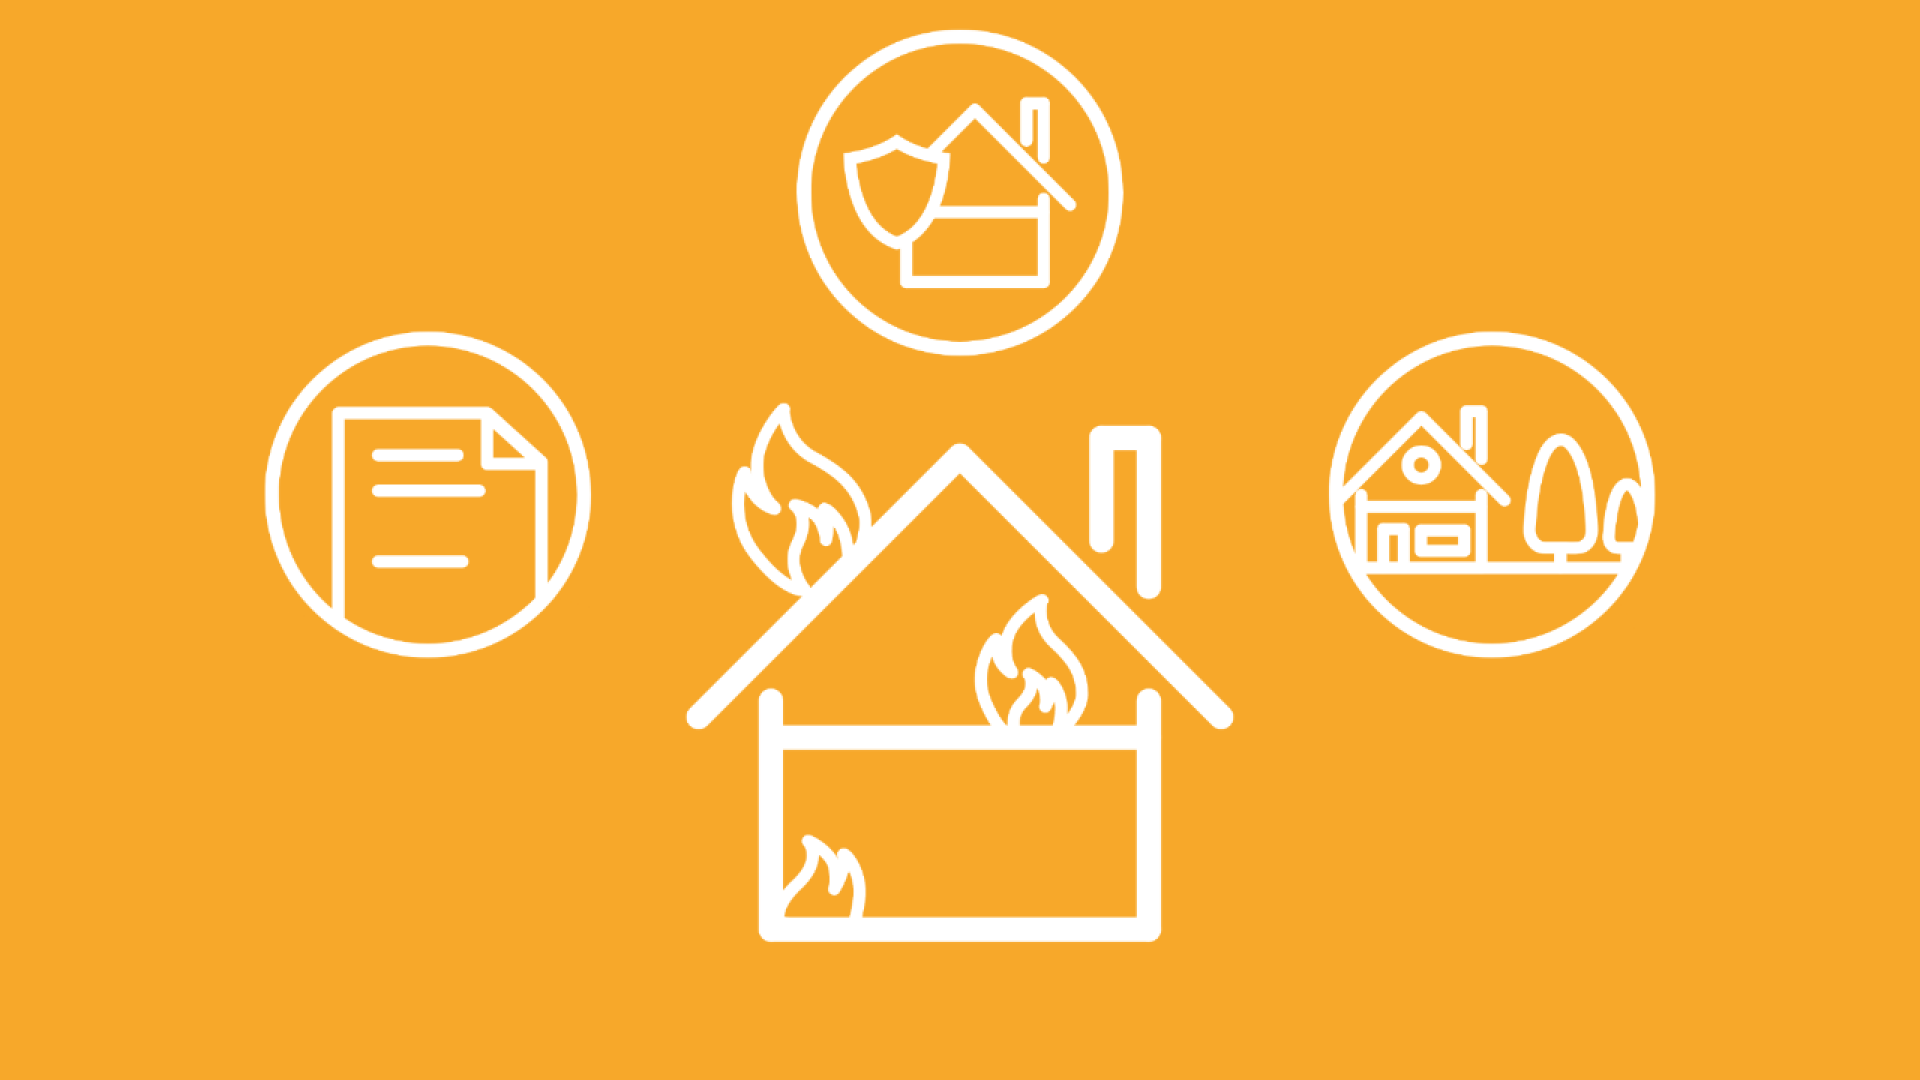 Um ein brennendes Haus herum sind drei Icons zu sehen, welche die Versicherungen Hausrat, Wohngebäude und Haftpflicht symbolisieren. 